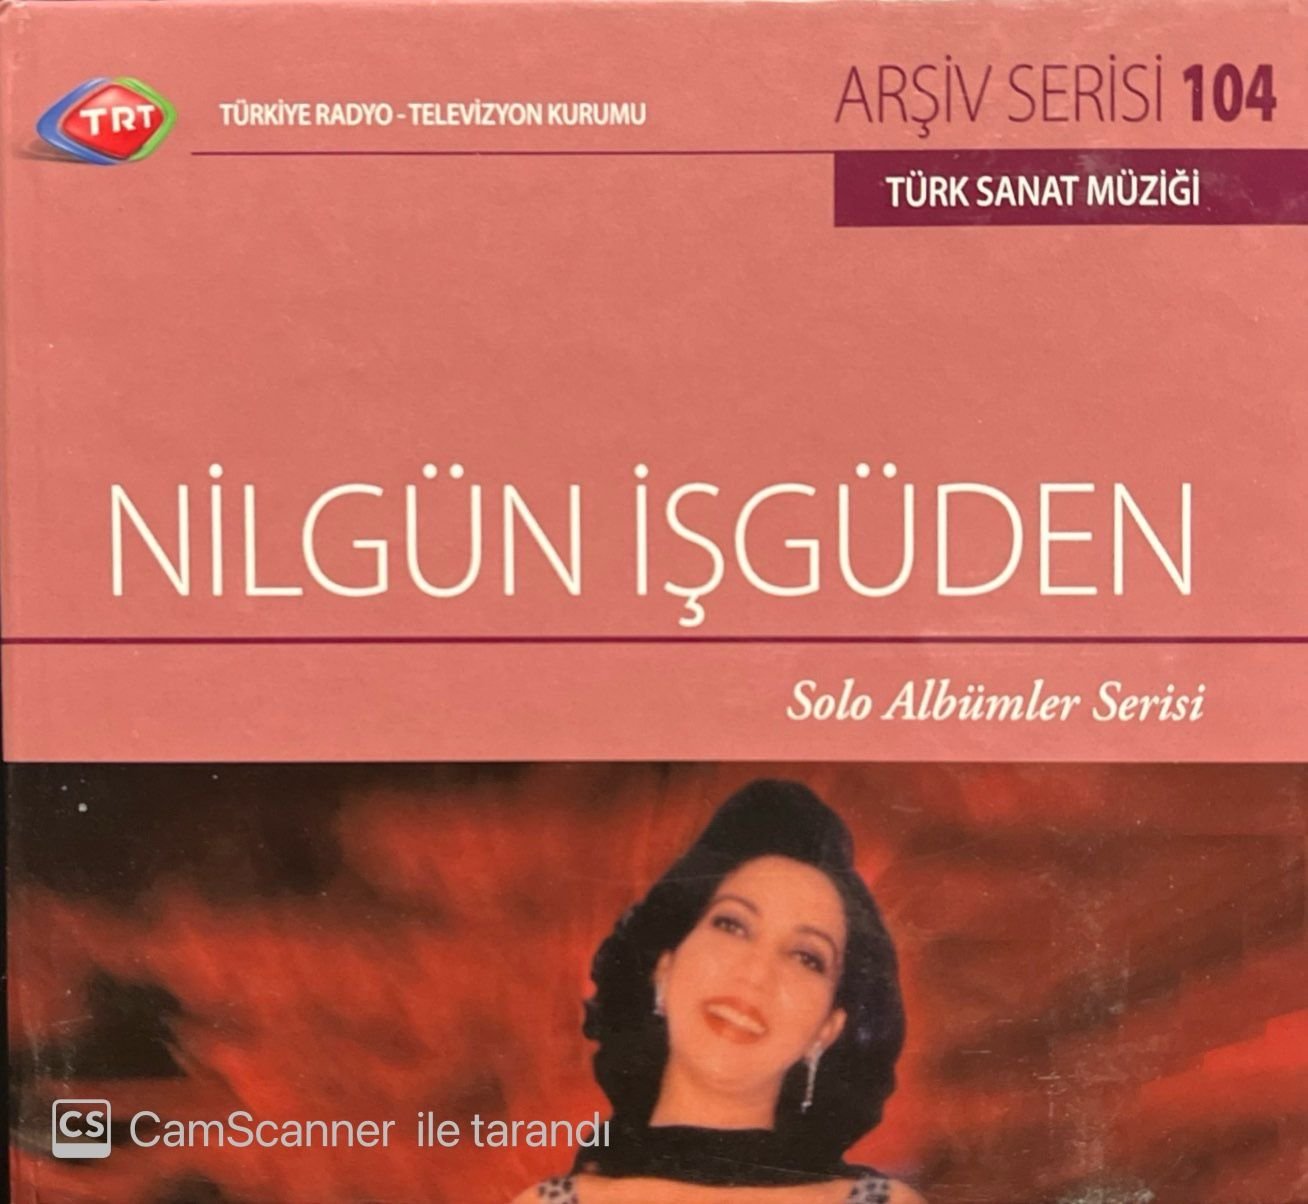 TRT Arşiv Serisi 104 Nilgün İşgüden Solo Albümler Serisi CD